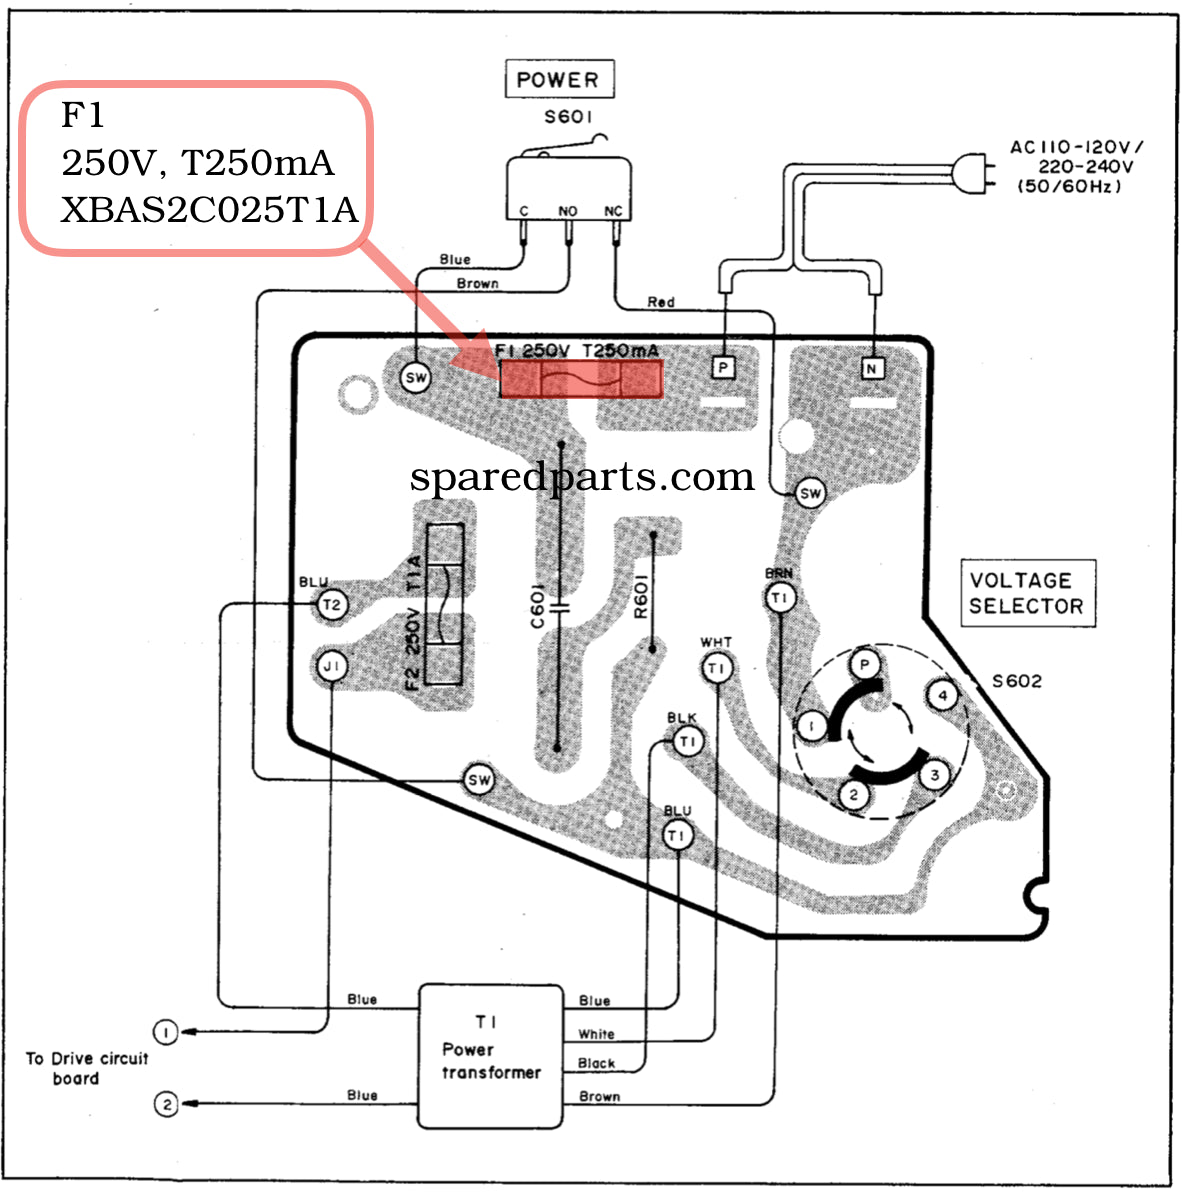 Image of circuit diagram.